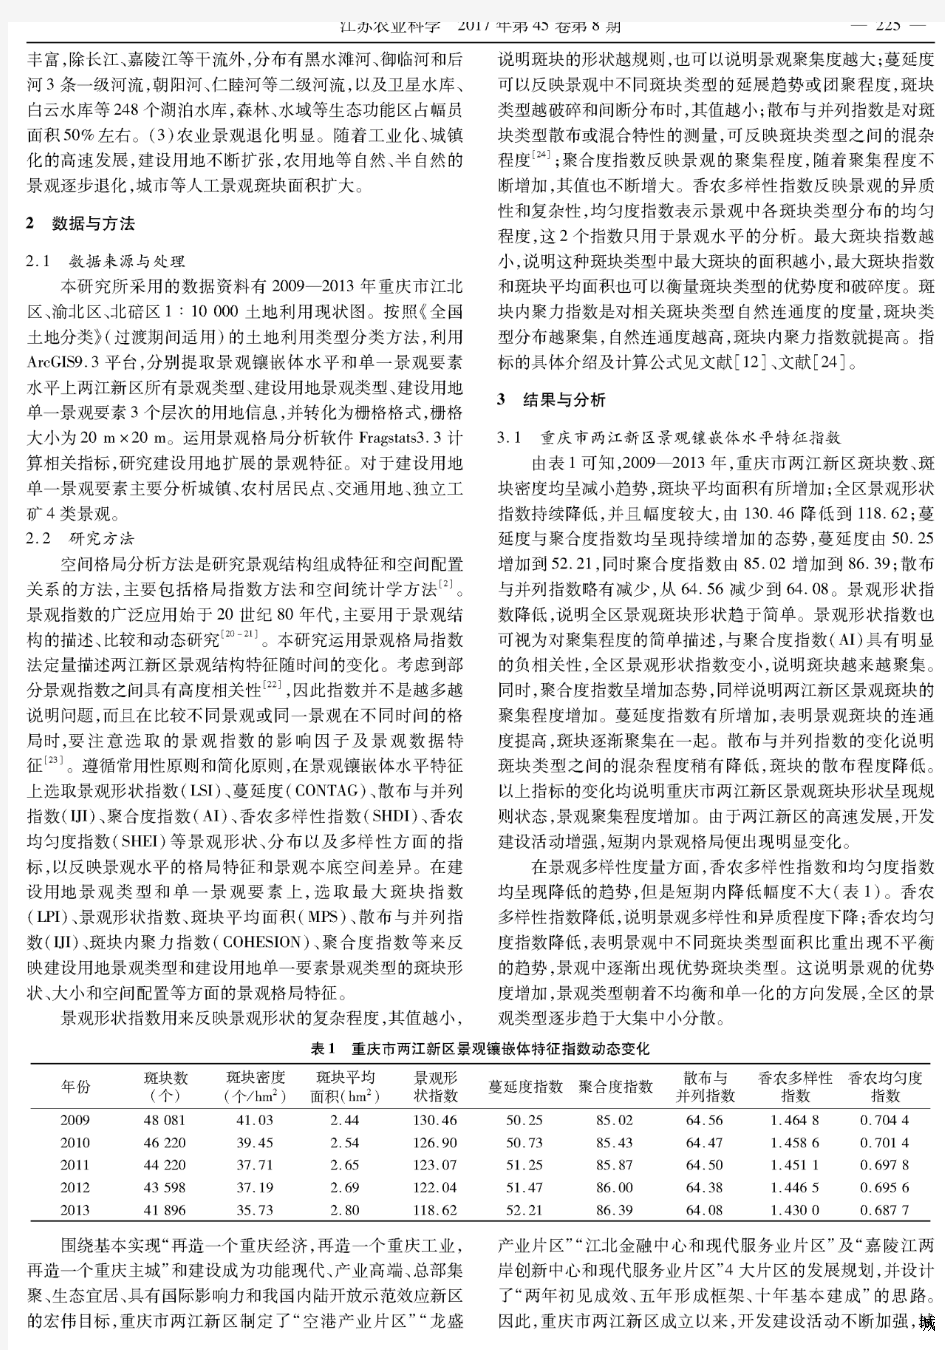 国家级新区建设用地扩展的景观格局特征分析——以重庆市两江新区为例